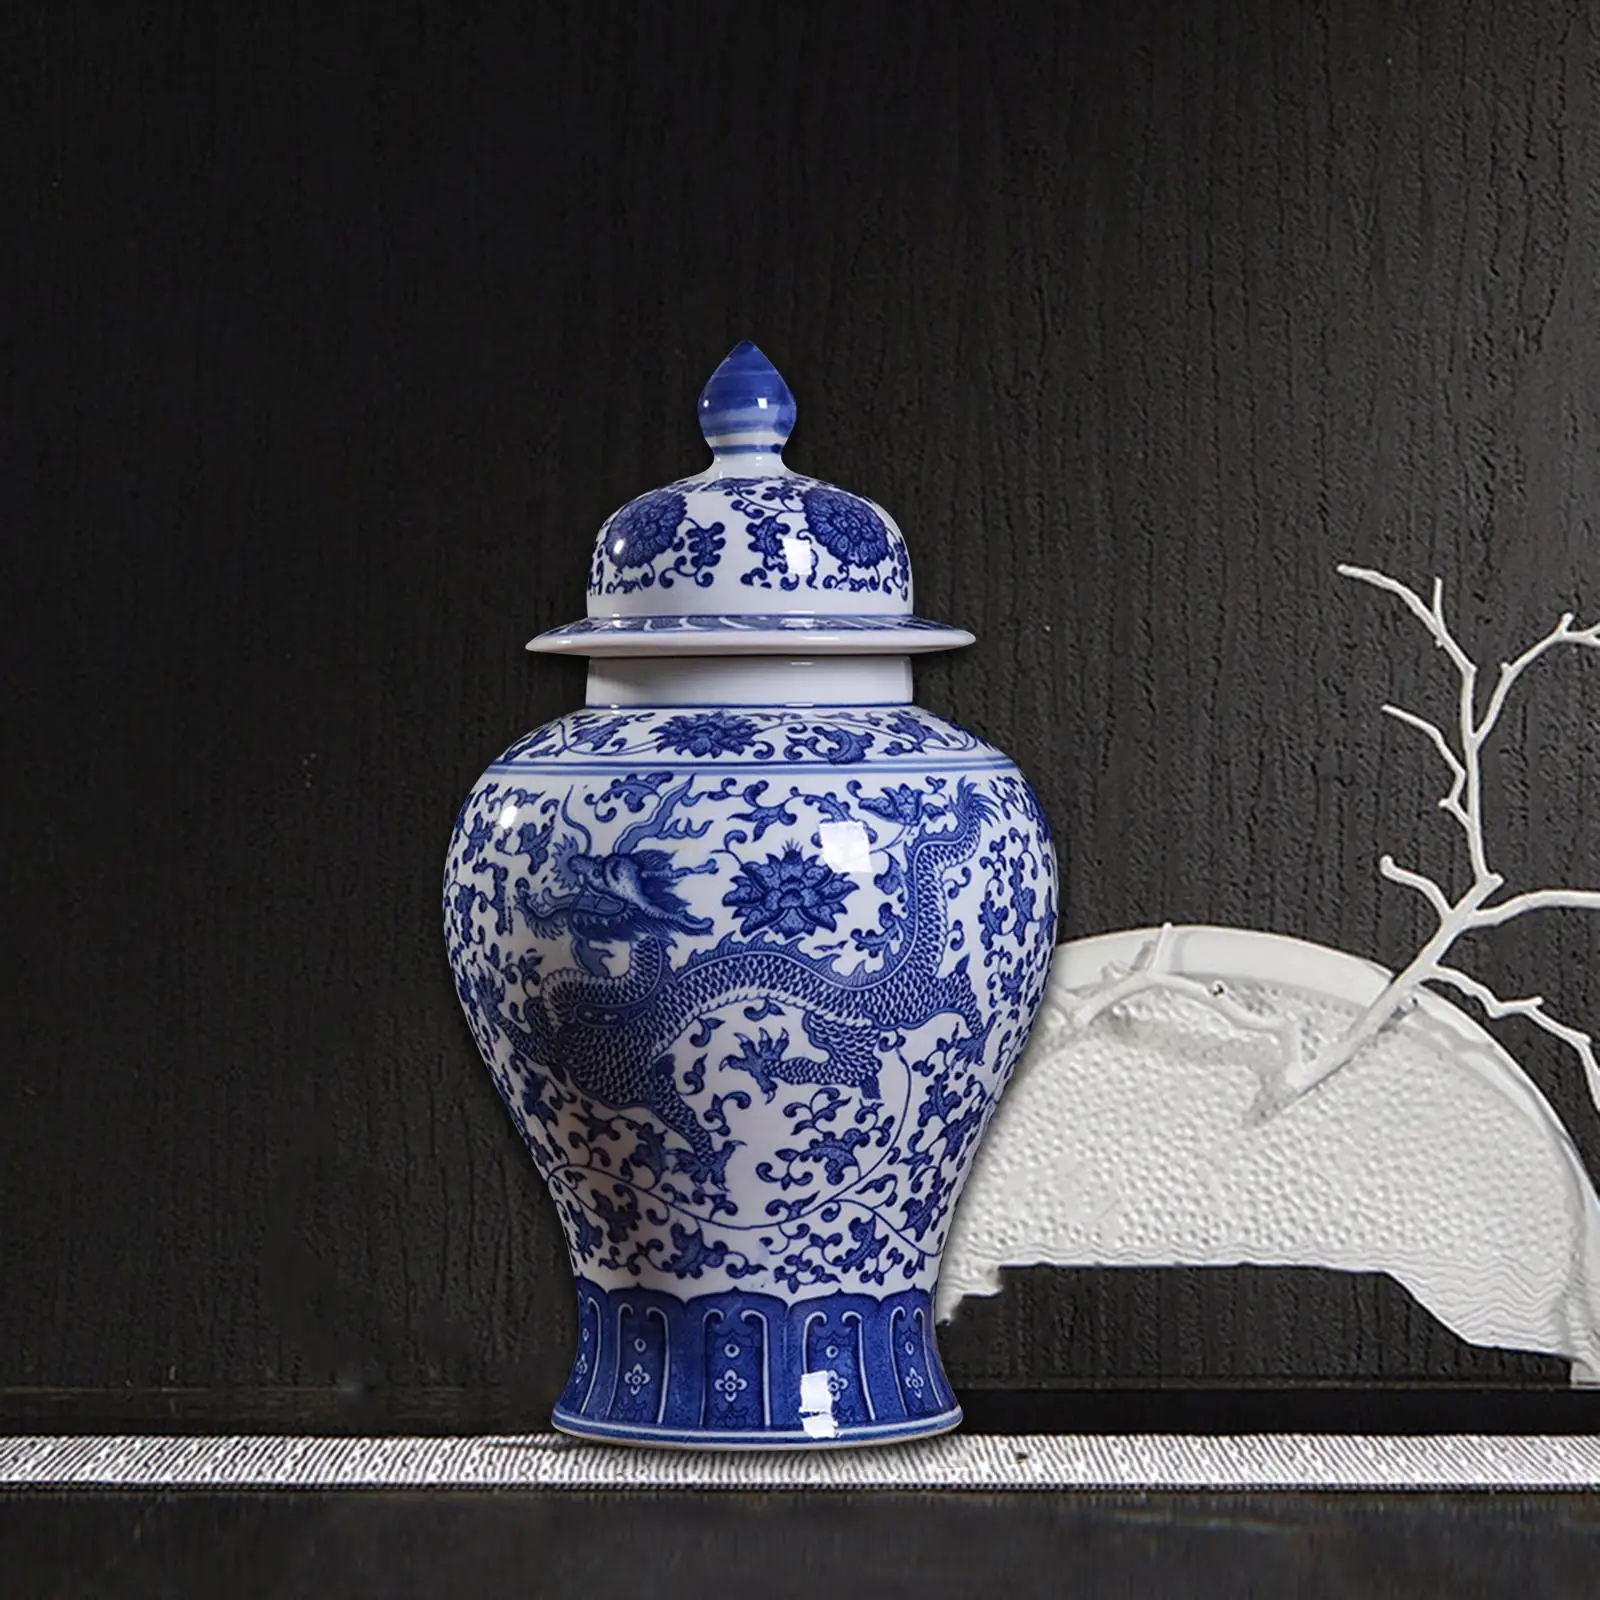 Porcelain Ginger Jar Temple Jar Storage Floral Arrangement Ceramic Flower Vase for Desk